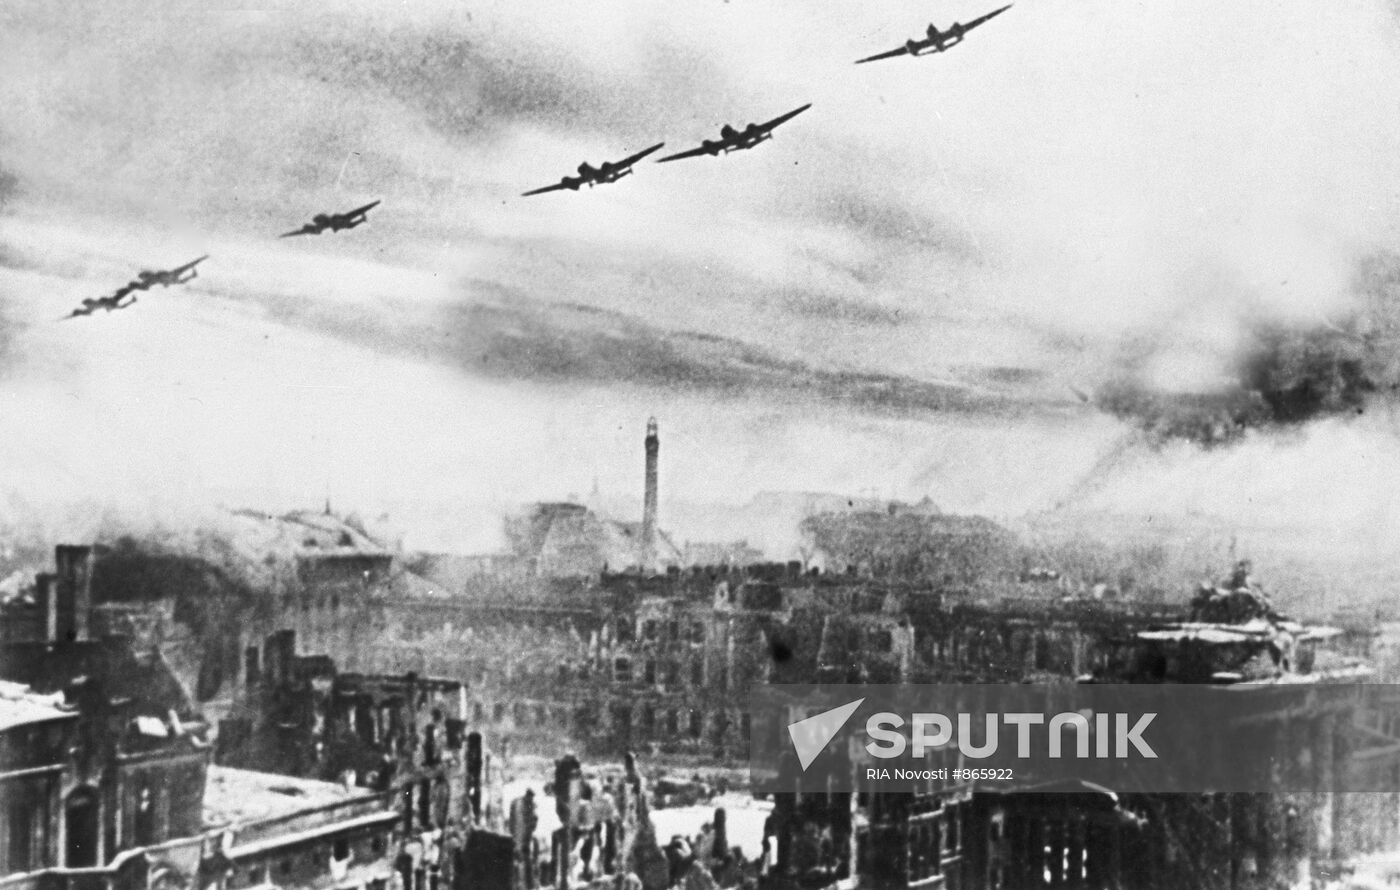 Soviet bombers over Berlin